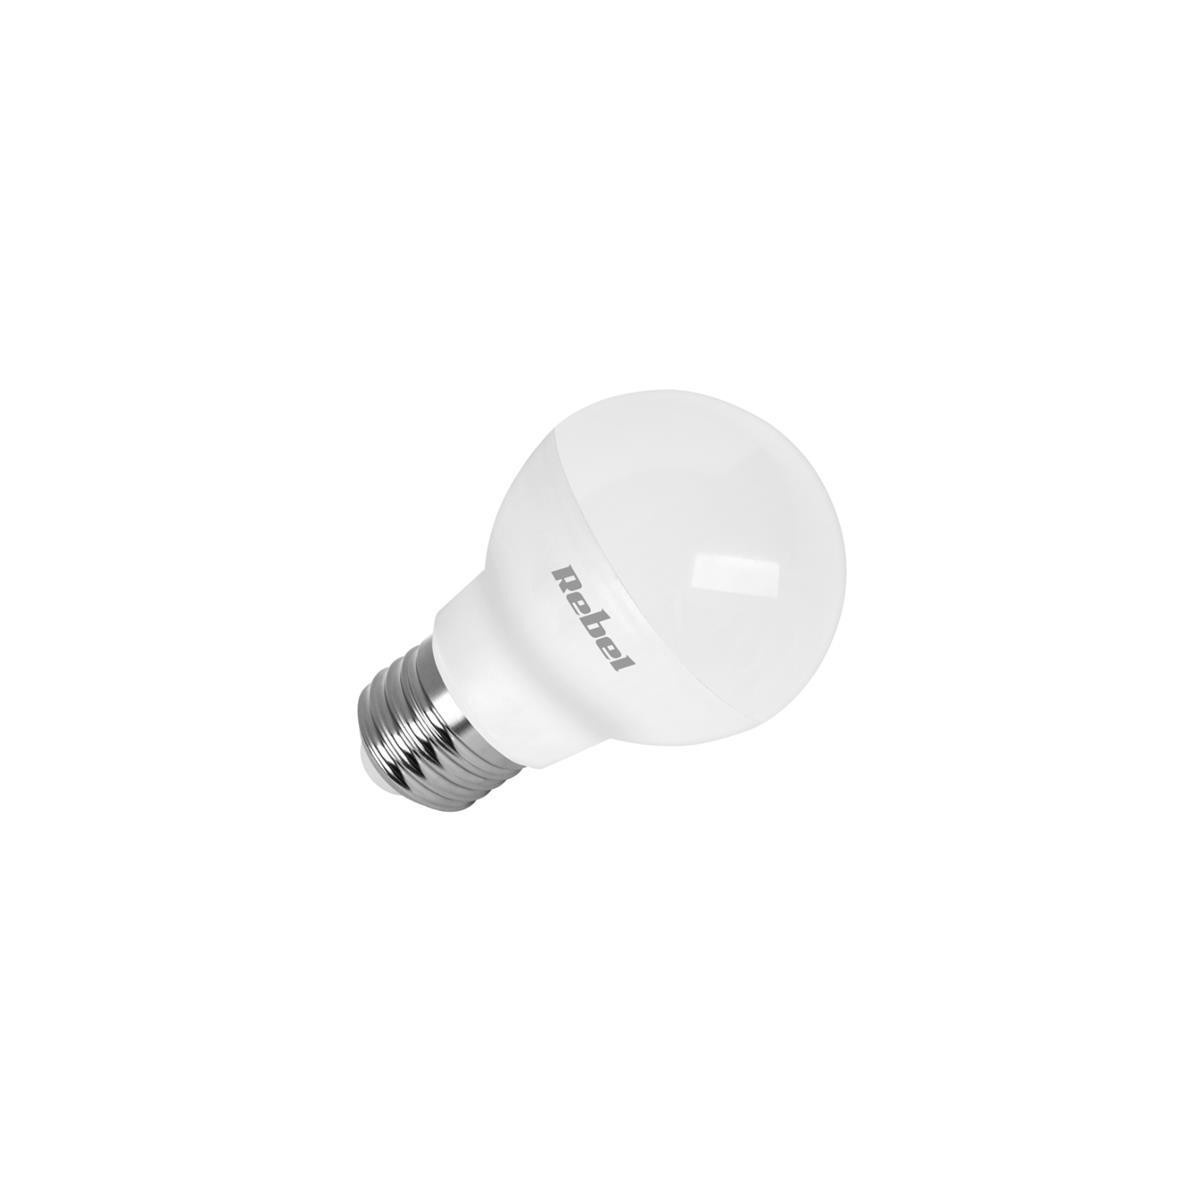 Žárovka LED E27 8W G45 REBEL bílá teplá ZAR0517-1